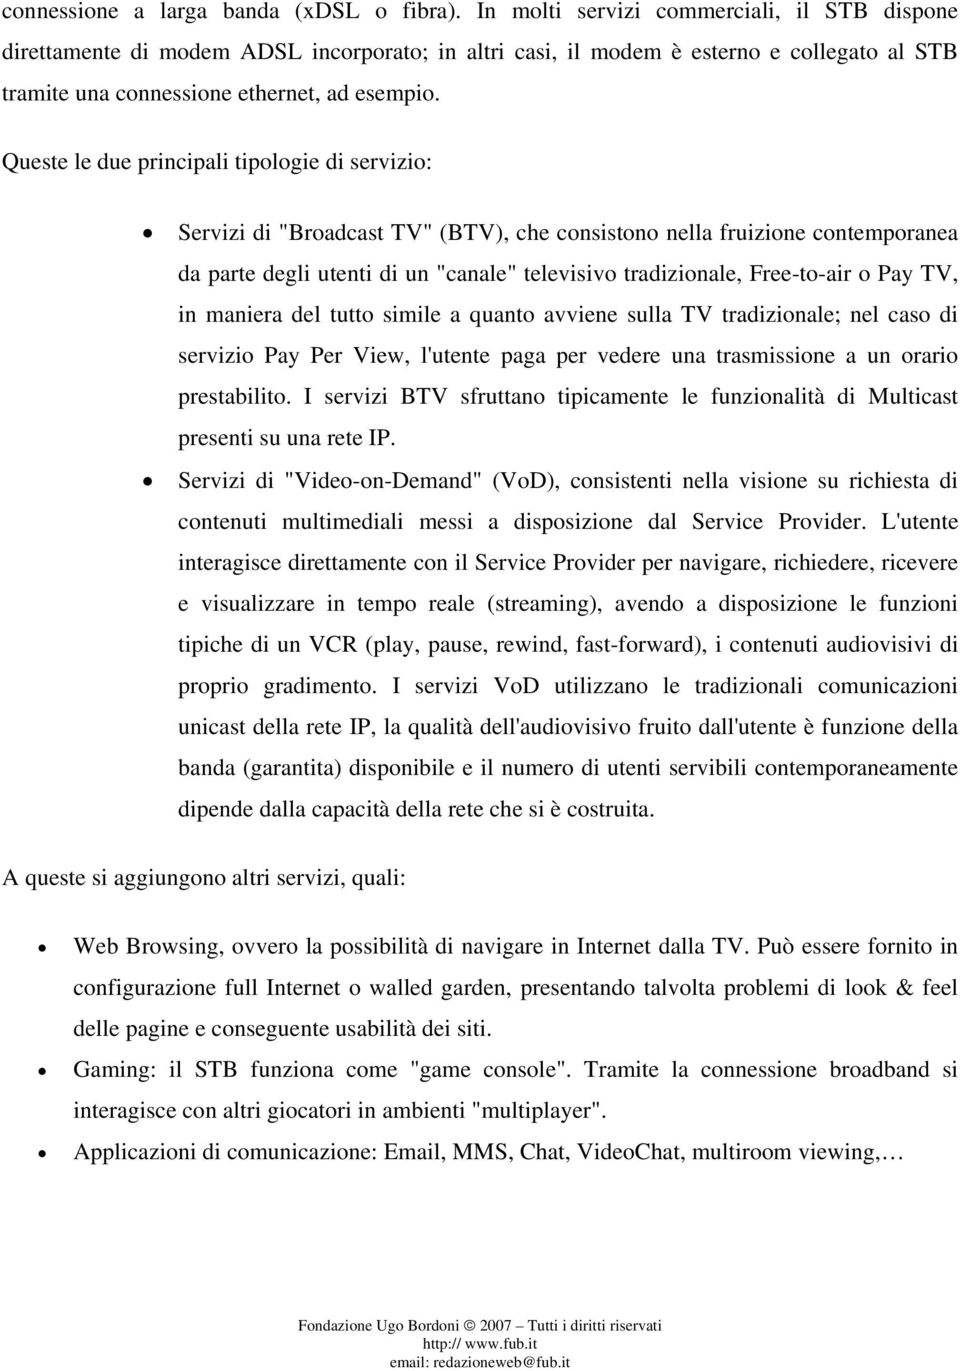 Queste le due principali tipologie di servizio: Servizi di "Broadcast TV" (BTV), che consistono nella fruizione contemporanea da parte degli utenti di un "canale" televisivo tradizionale, Free-to-air